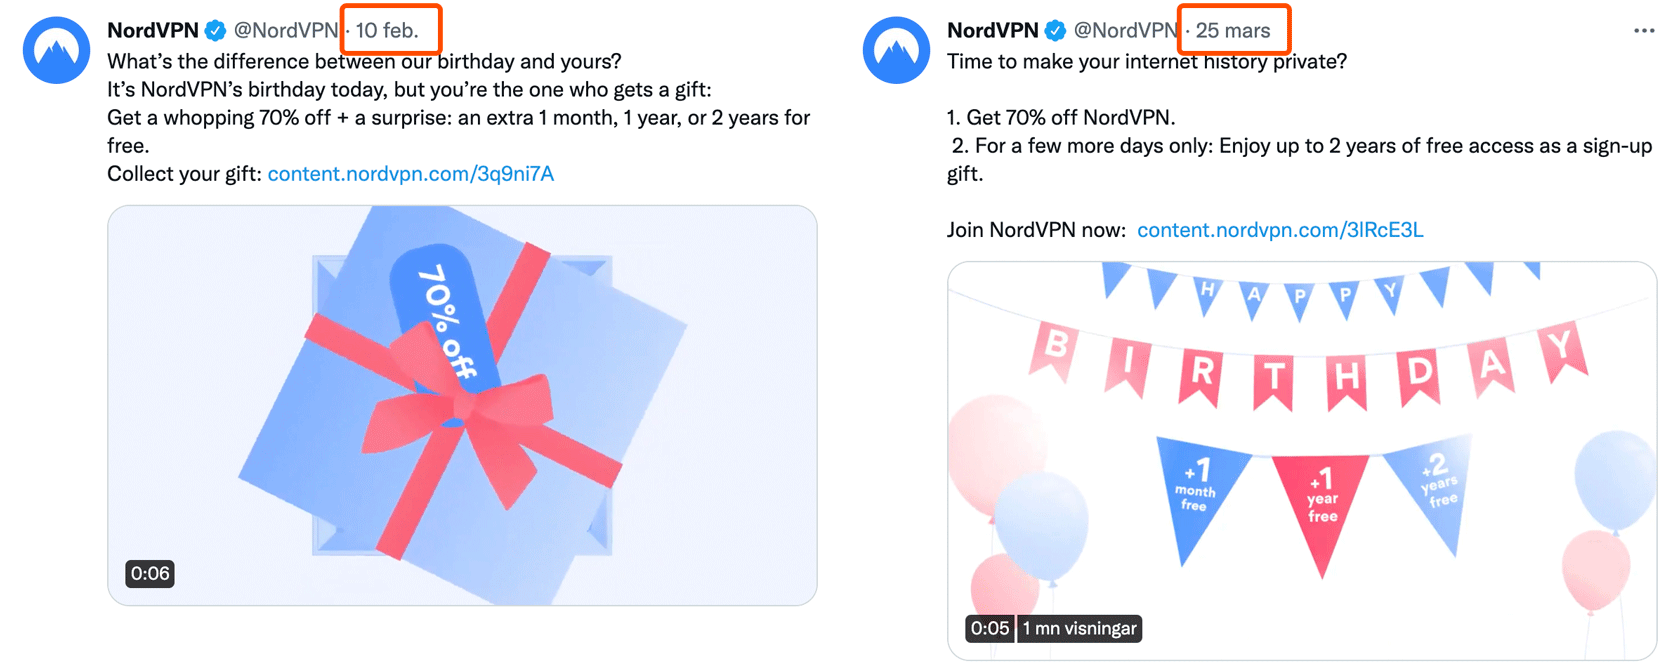 Två Twitter-inlägg om NordVPN:s födelsedag. Det ena är från 10:e februari, det andra är från 25:e mars.